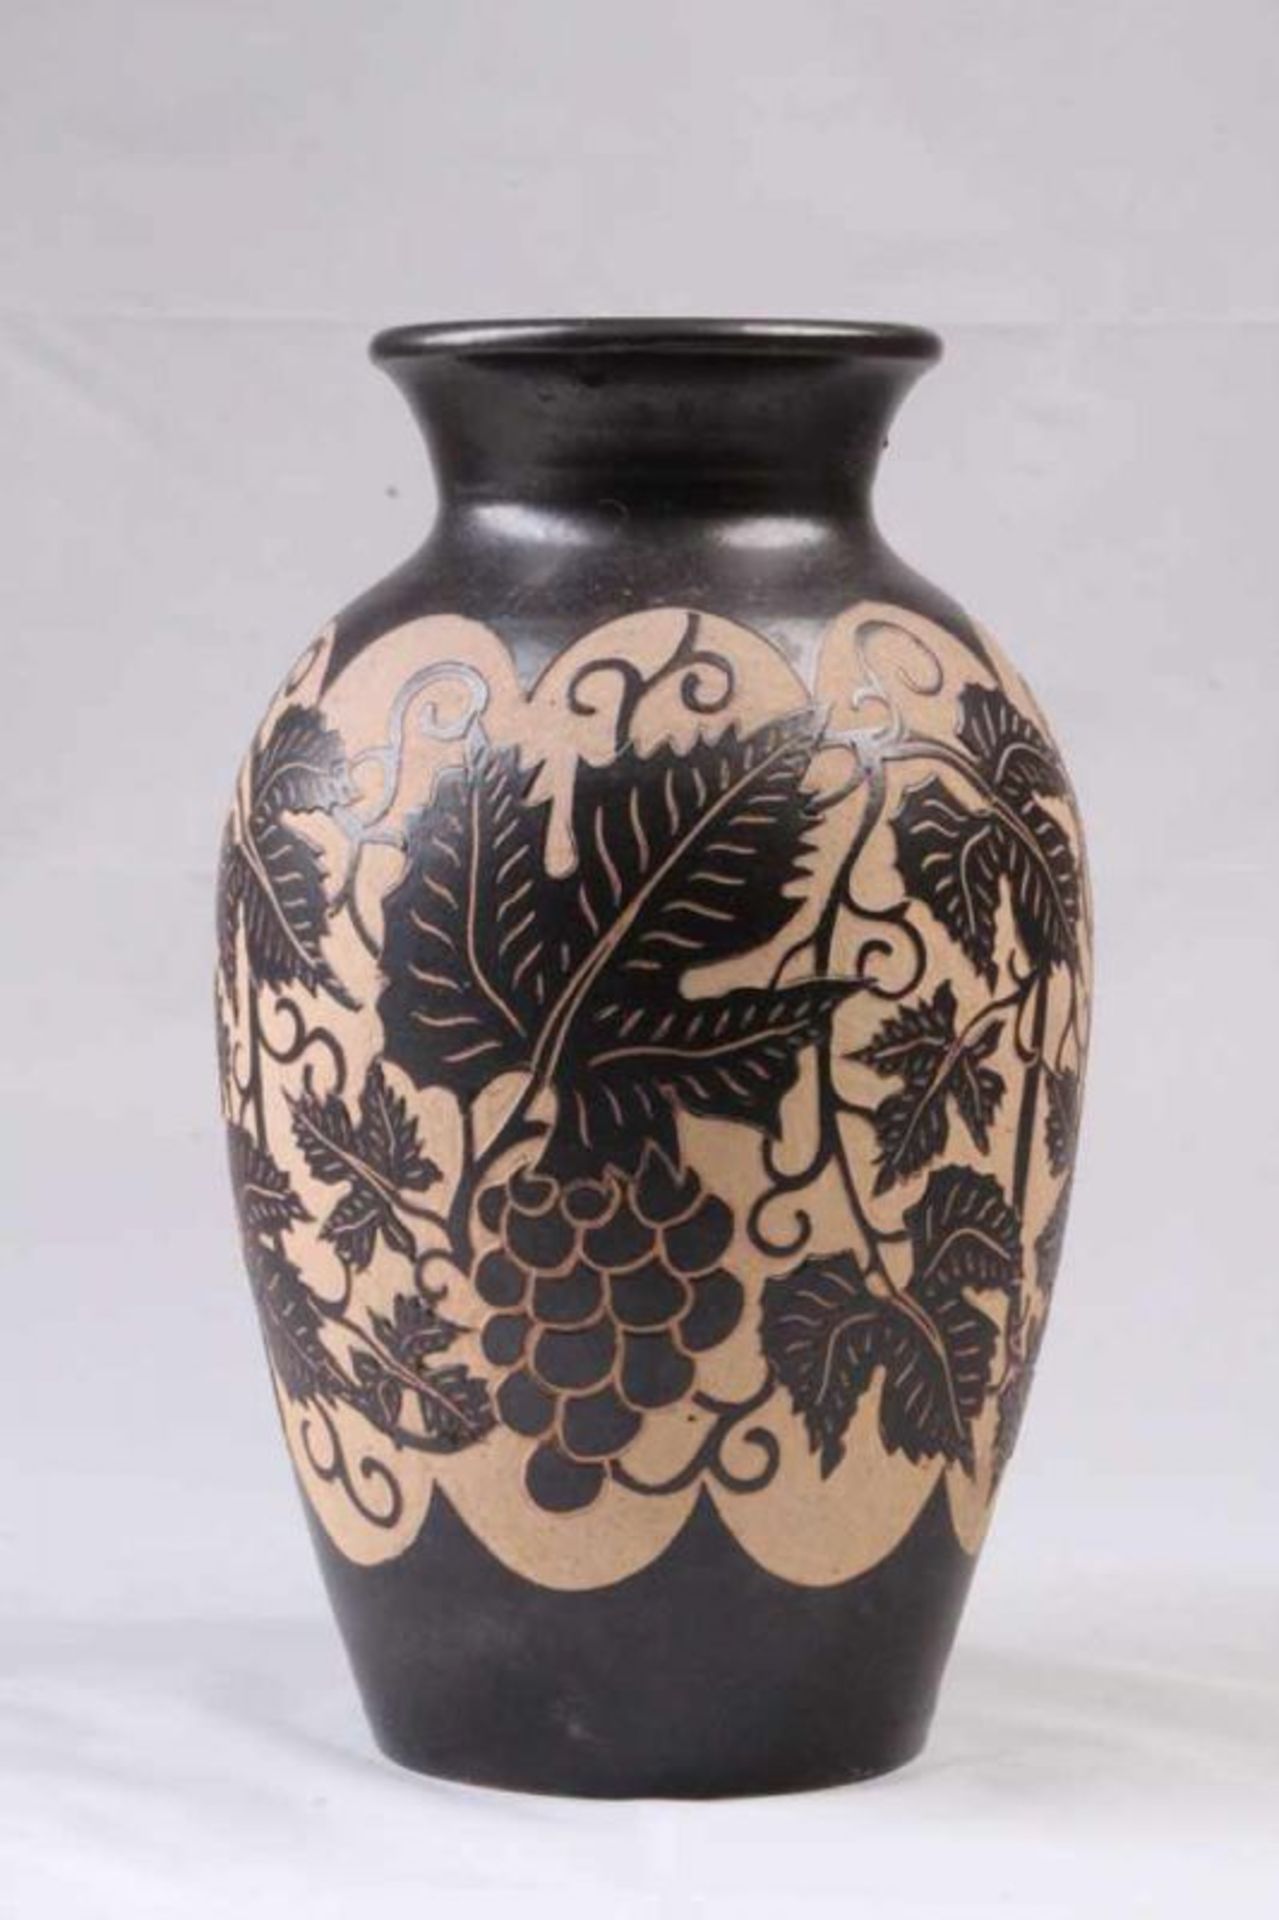 Keramikvase.Anthrazitfarbene Glasur. Geätzter Dekor von Weinlaub und Trauben. H: 33 cm. 20.00 %